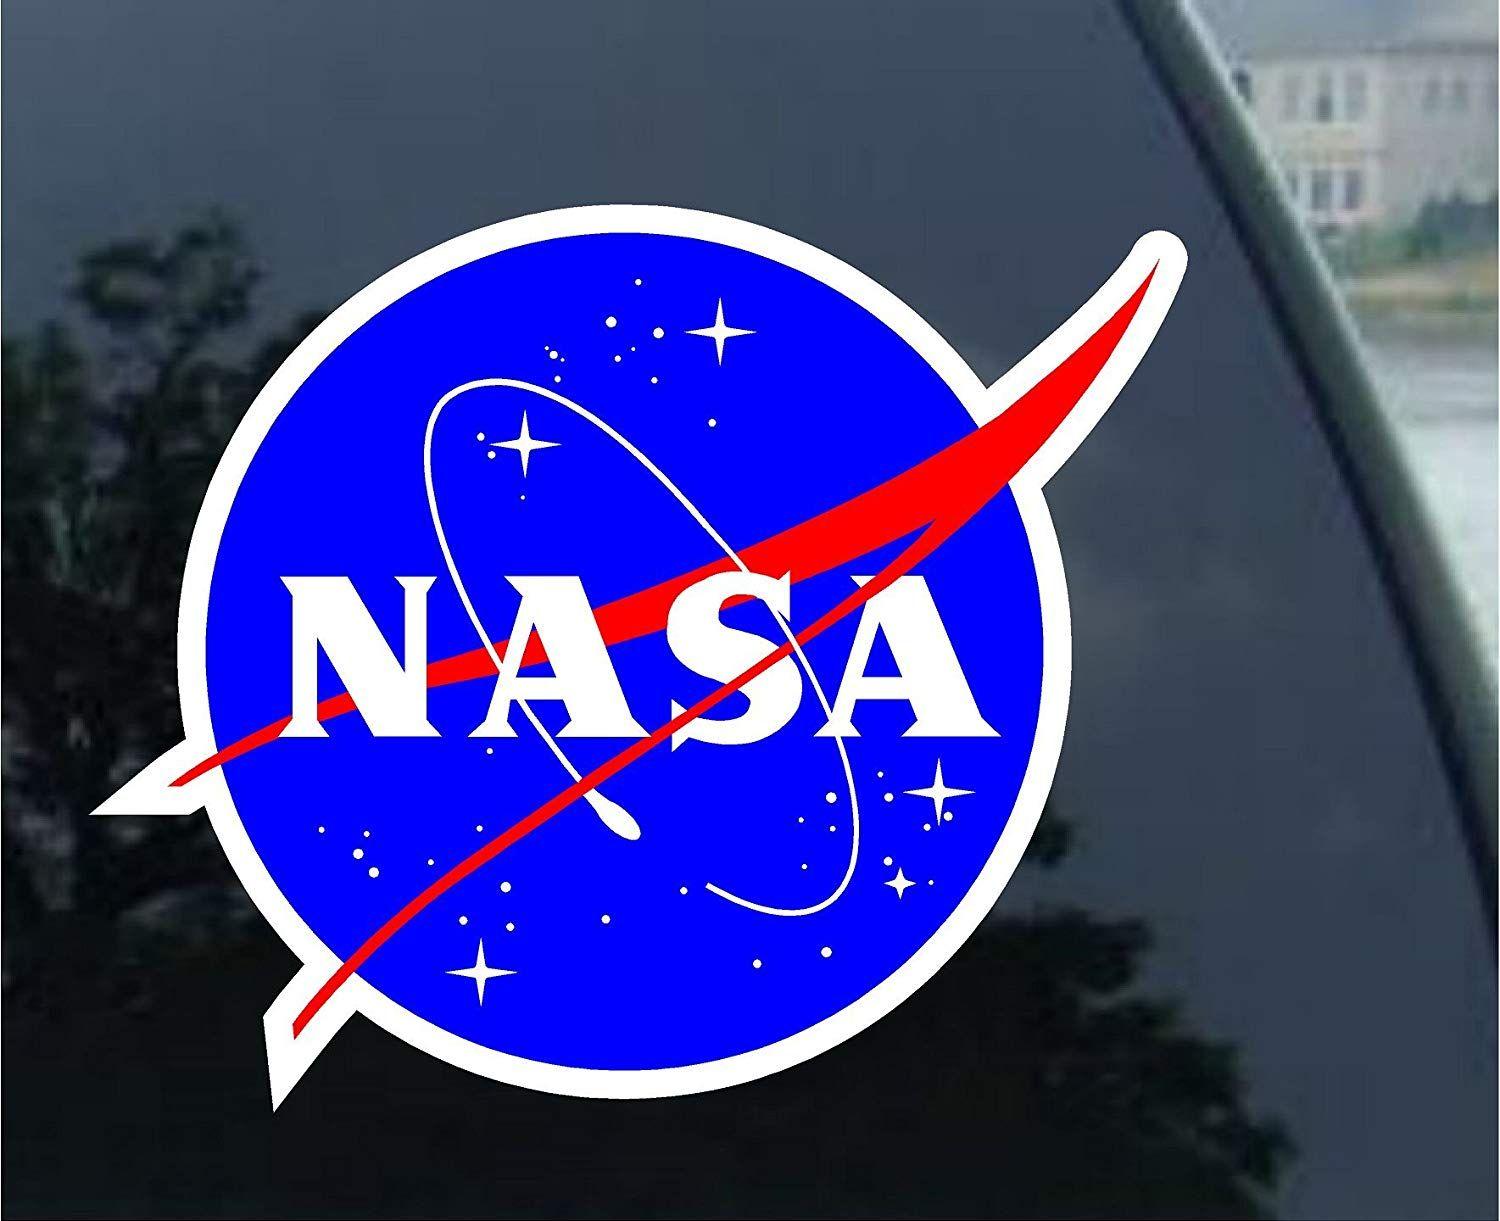 High Quality NASA Logo - Nasa Seal USA Space Cosmos Logo Vinyl Sticker Decal 2